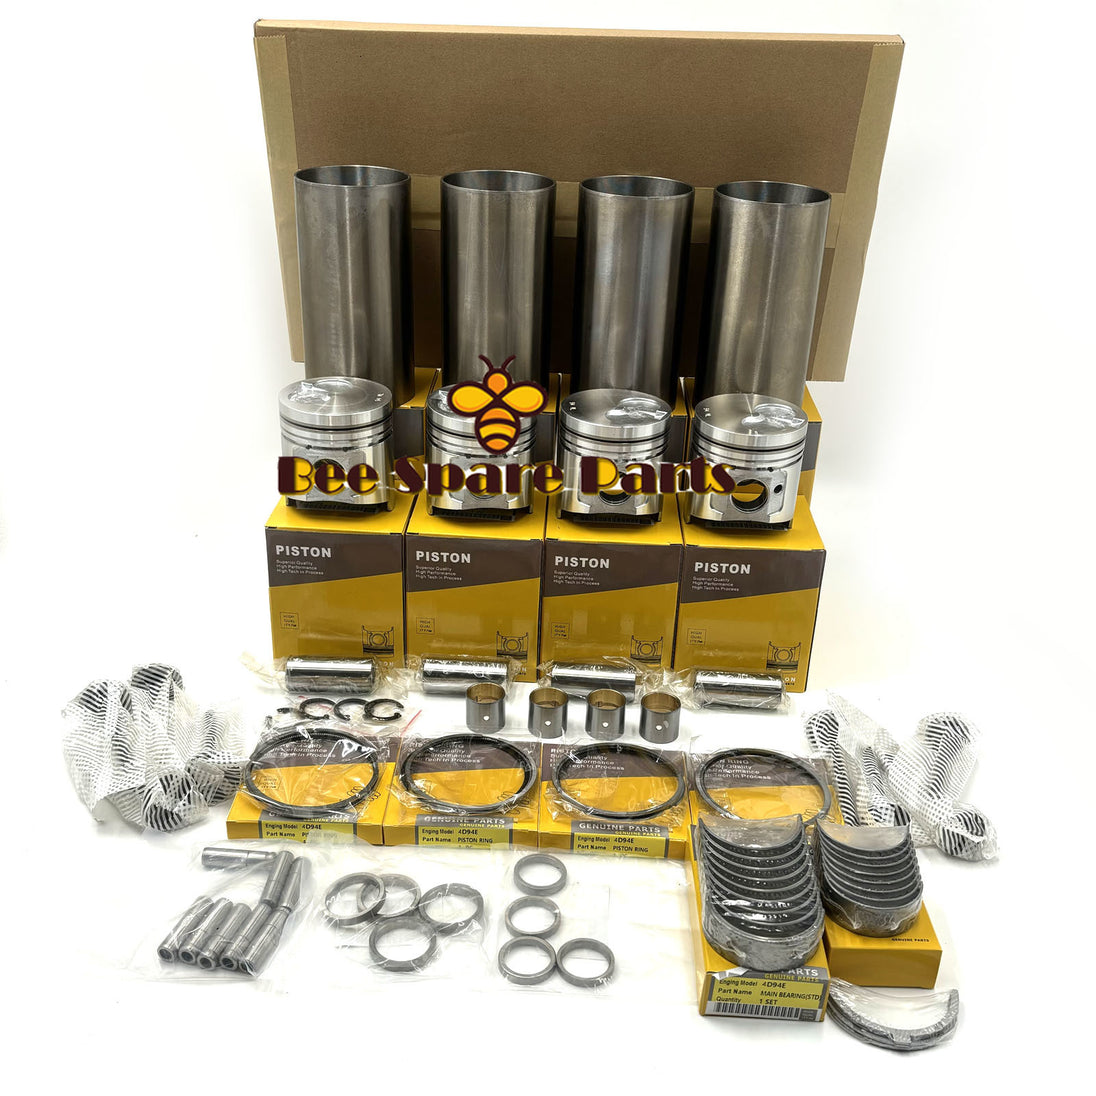 13B Repair Kit With Full Gasket Set Piston Rings Liner Bearings For Car Engine